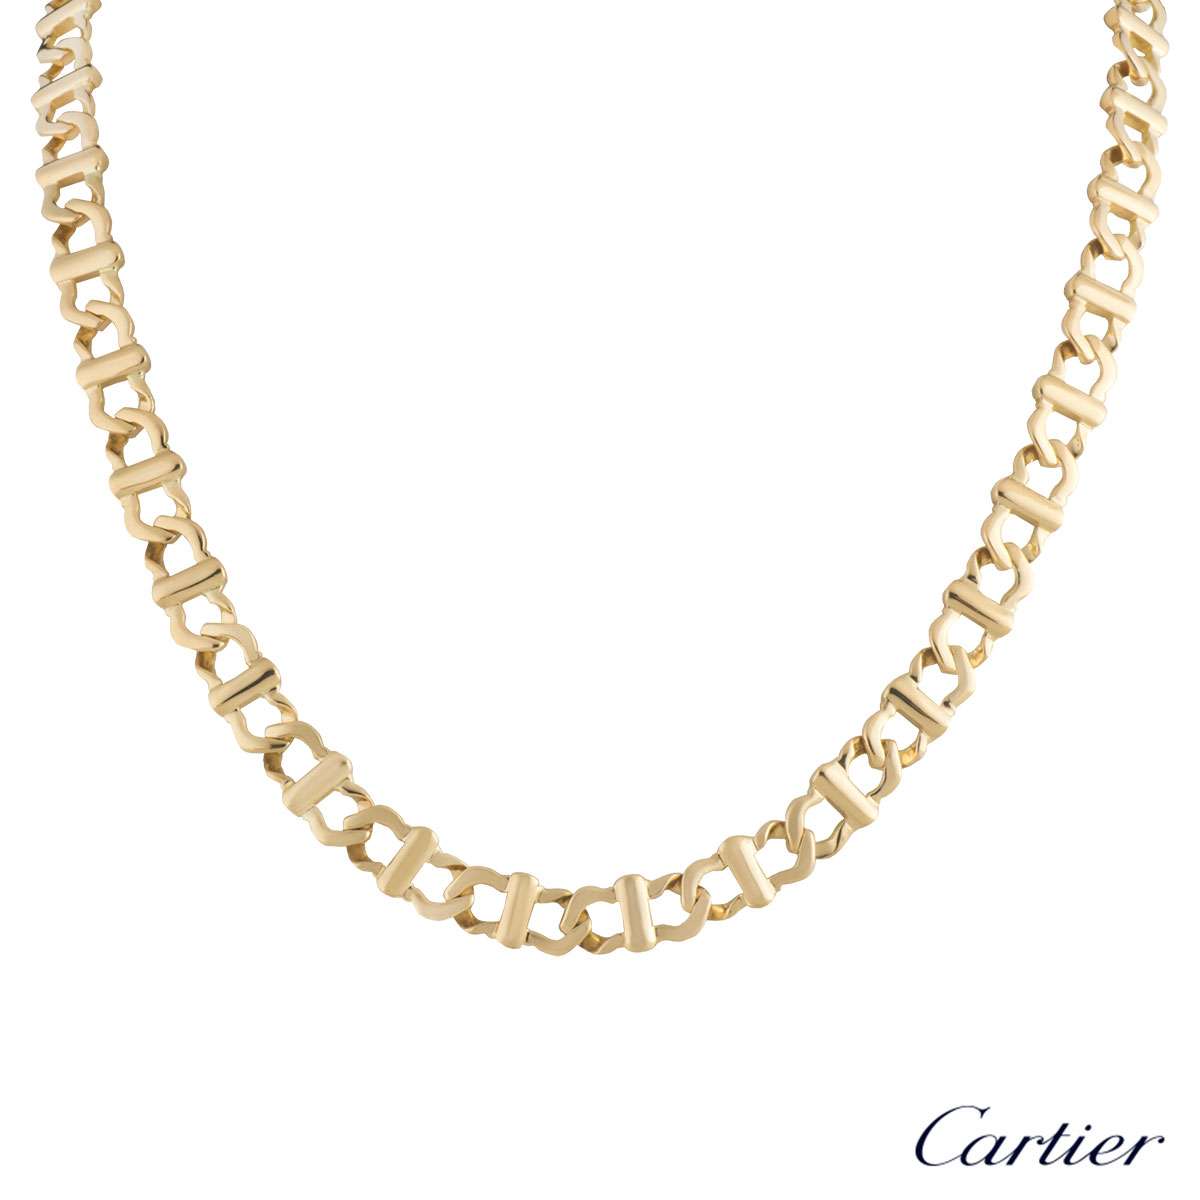 cartier chain necklaces